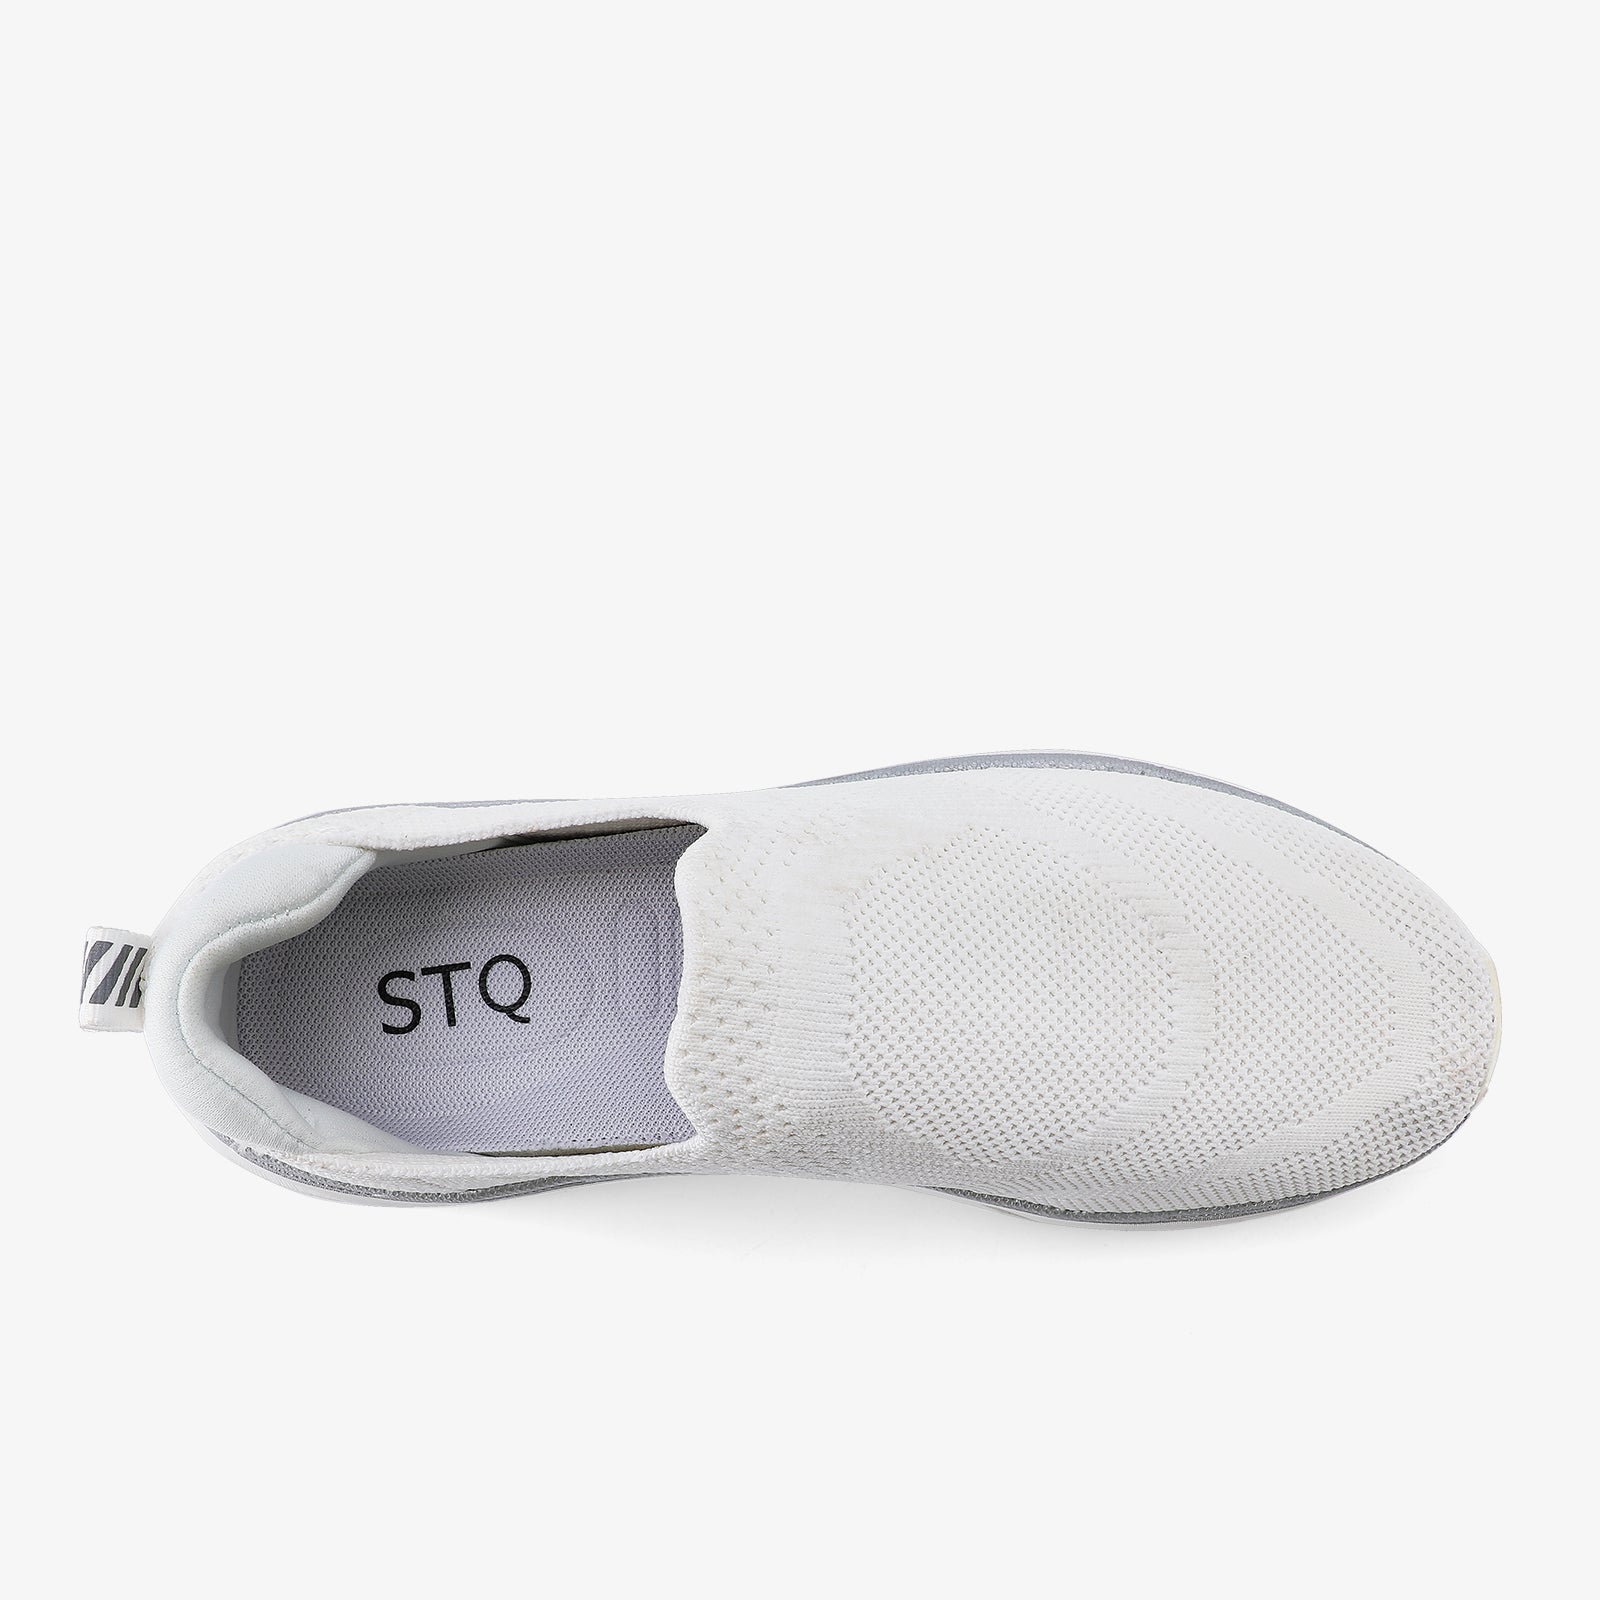 stq-slip-on-walking-platform-sneakers-view